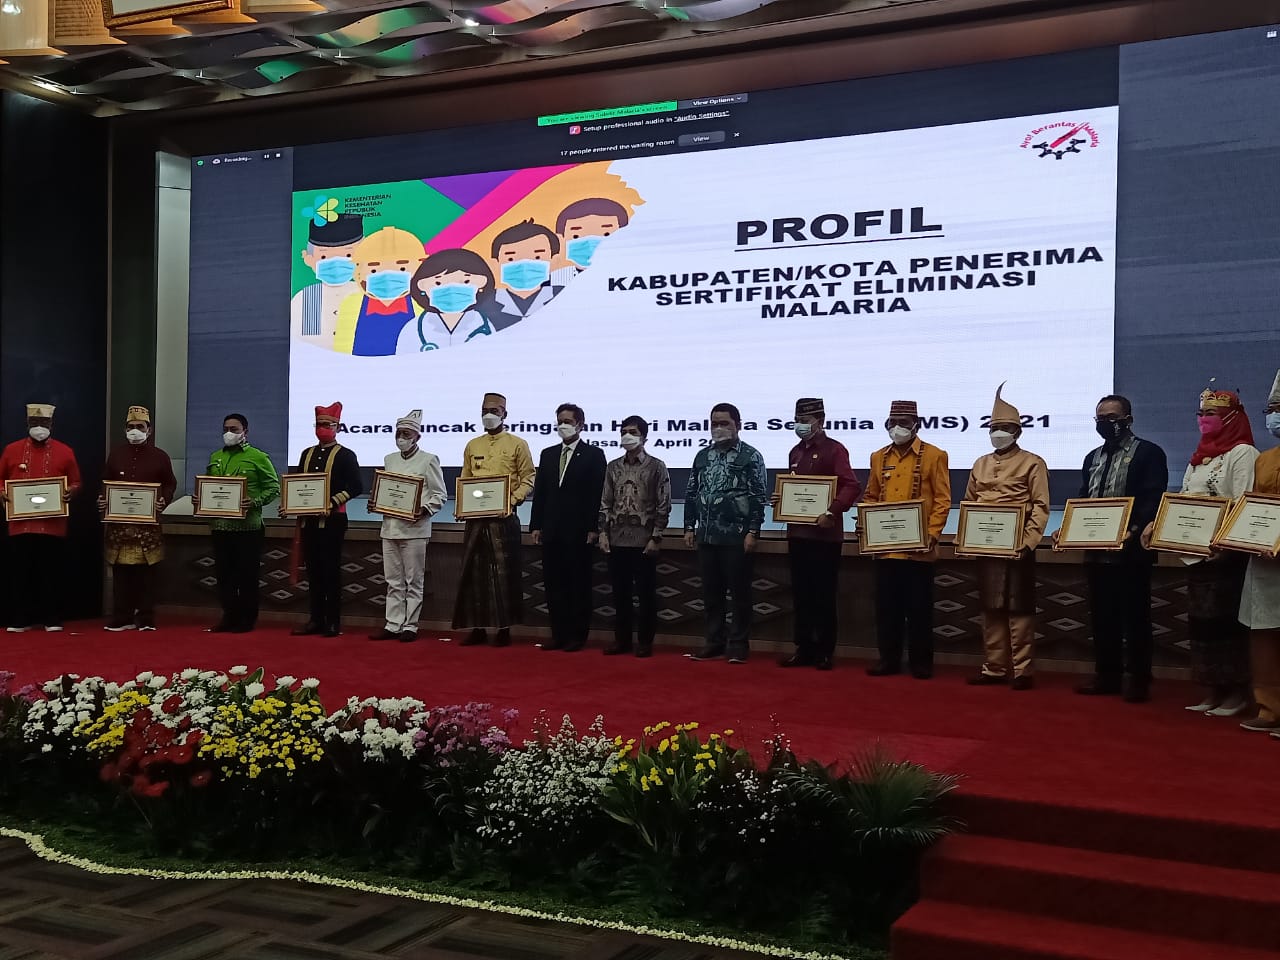 Foto bersama perwakilan 12 Kabupaten/Kota di Indonesia yang menerima penghargaan sertifikat Elminasi Malaria